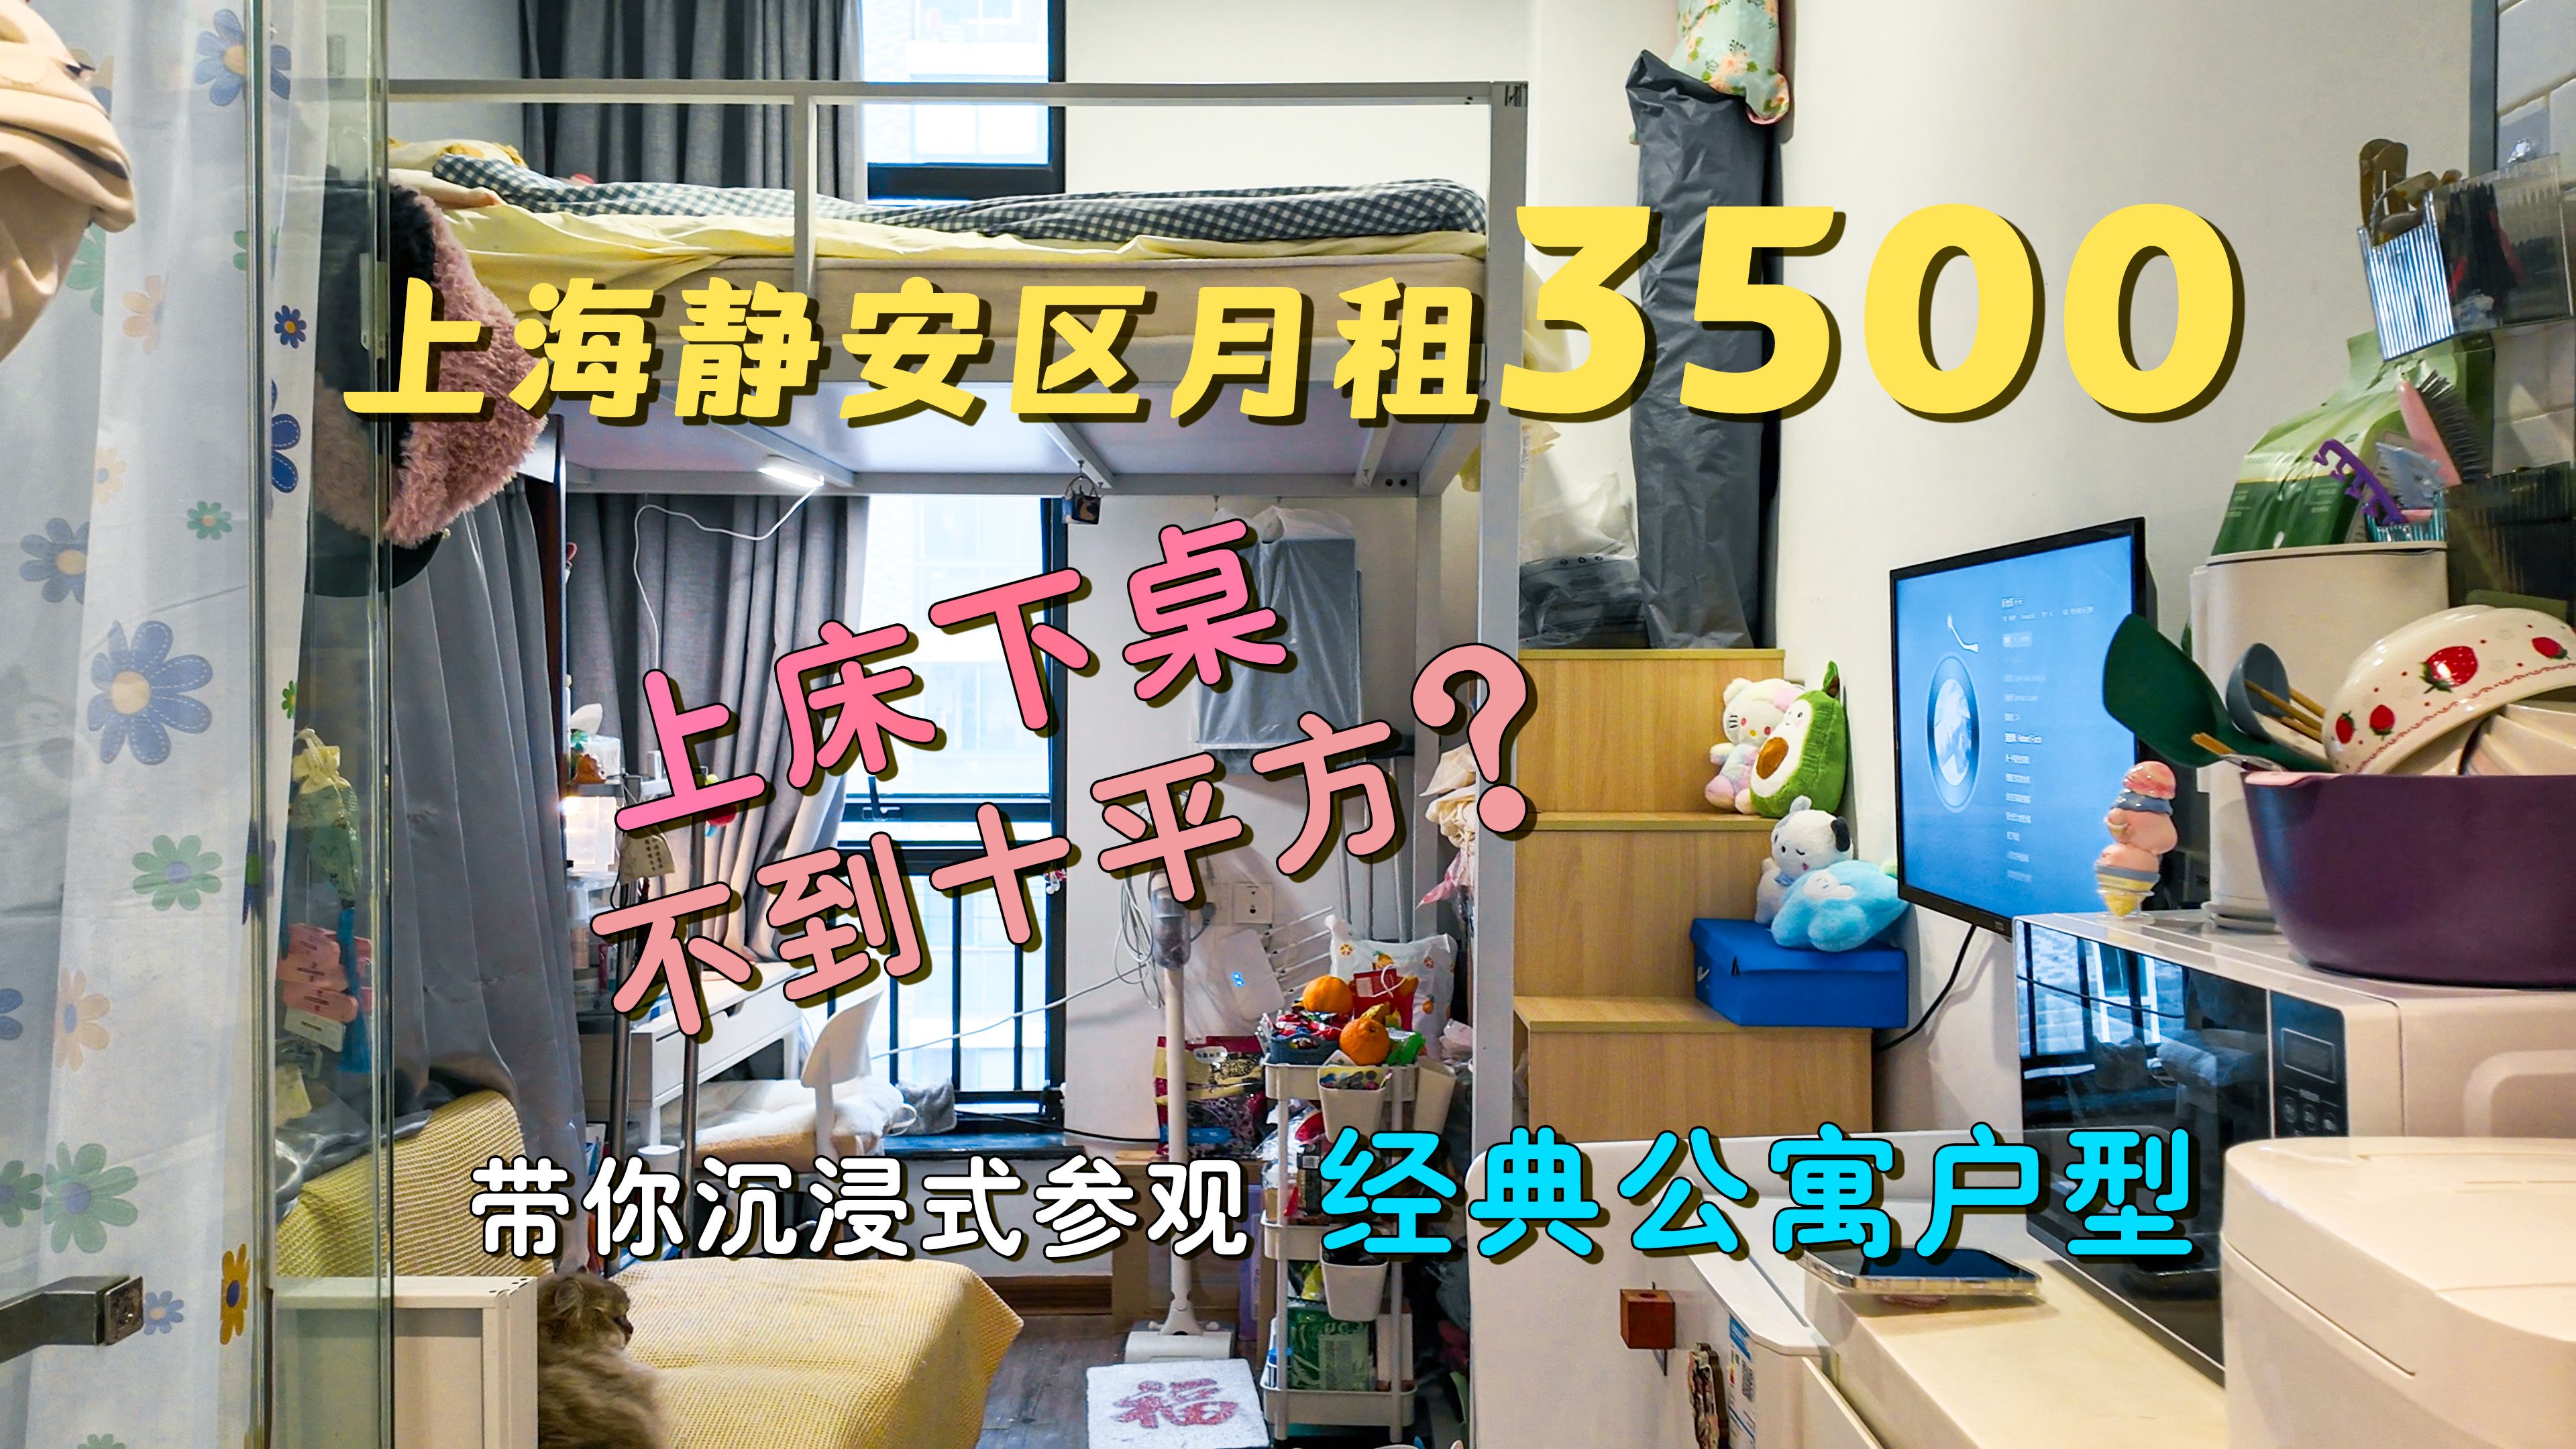 这可能是你来上海租房会最常见的房型